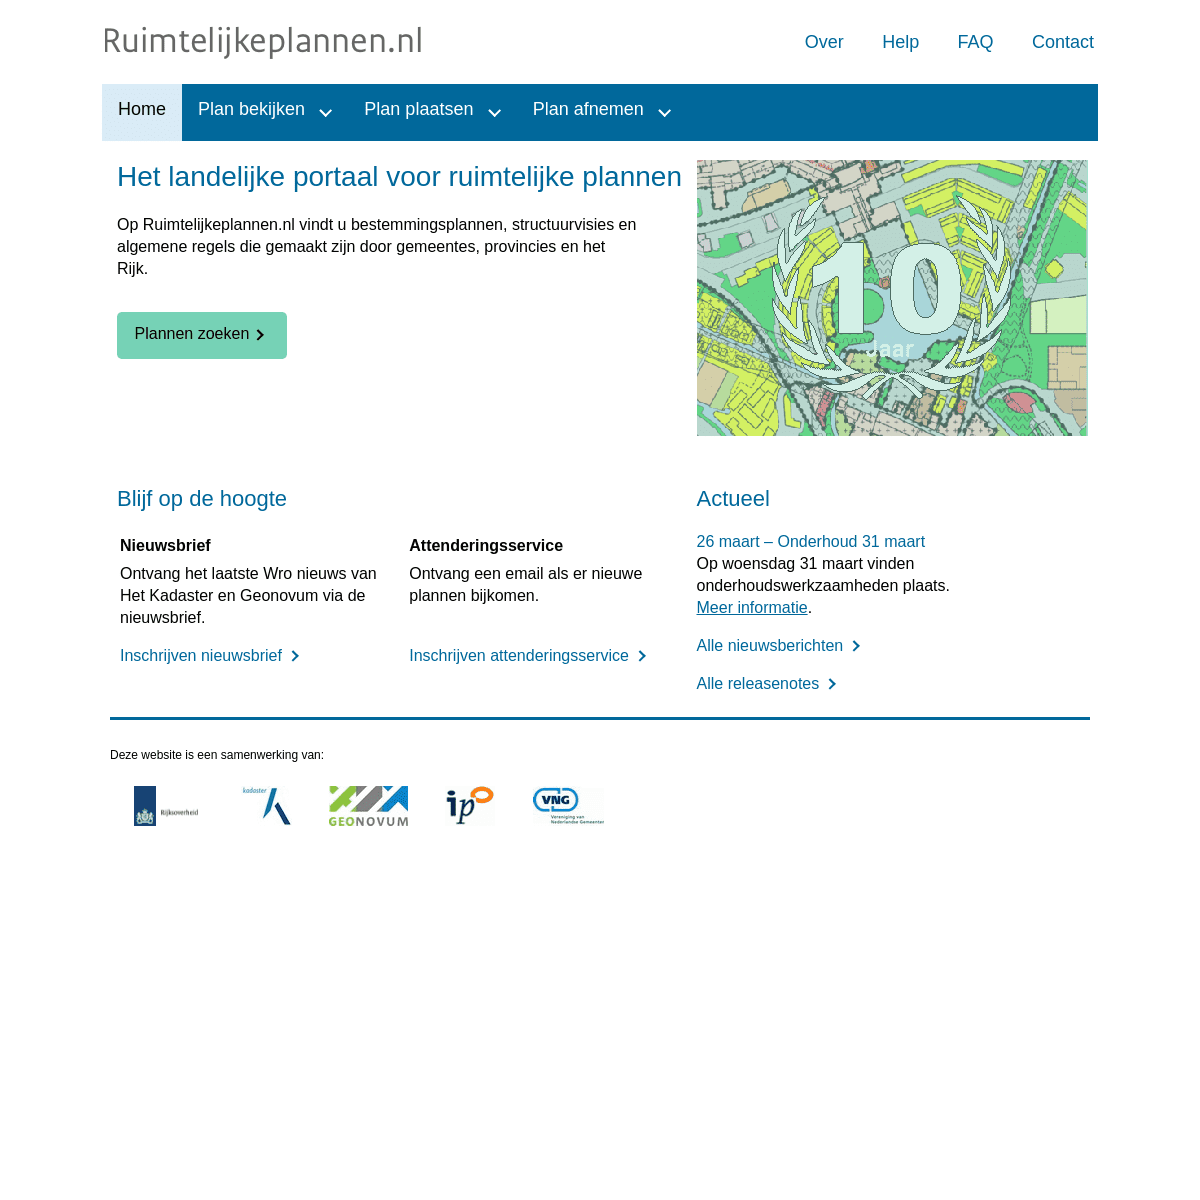 A complete backup of https://ruimtelijkeplannen.nl